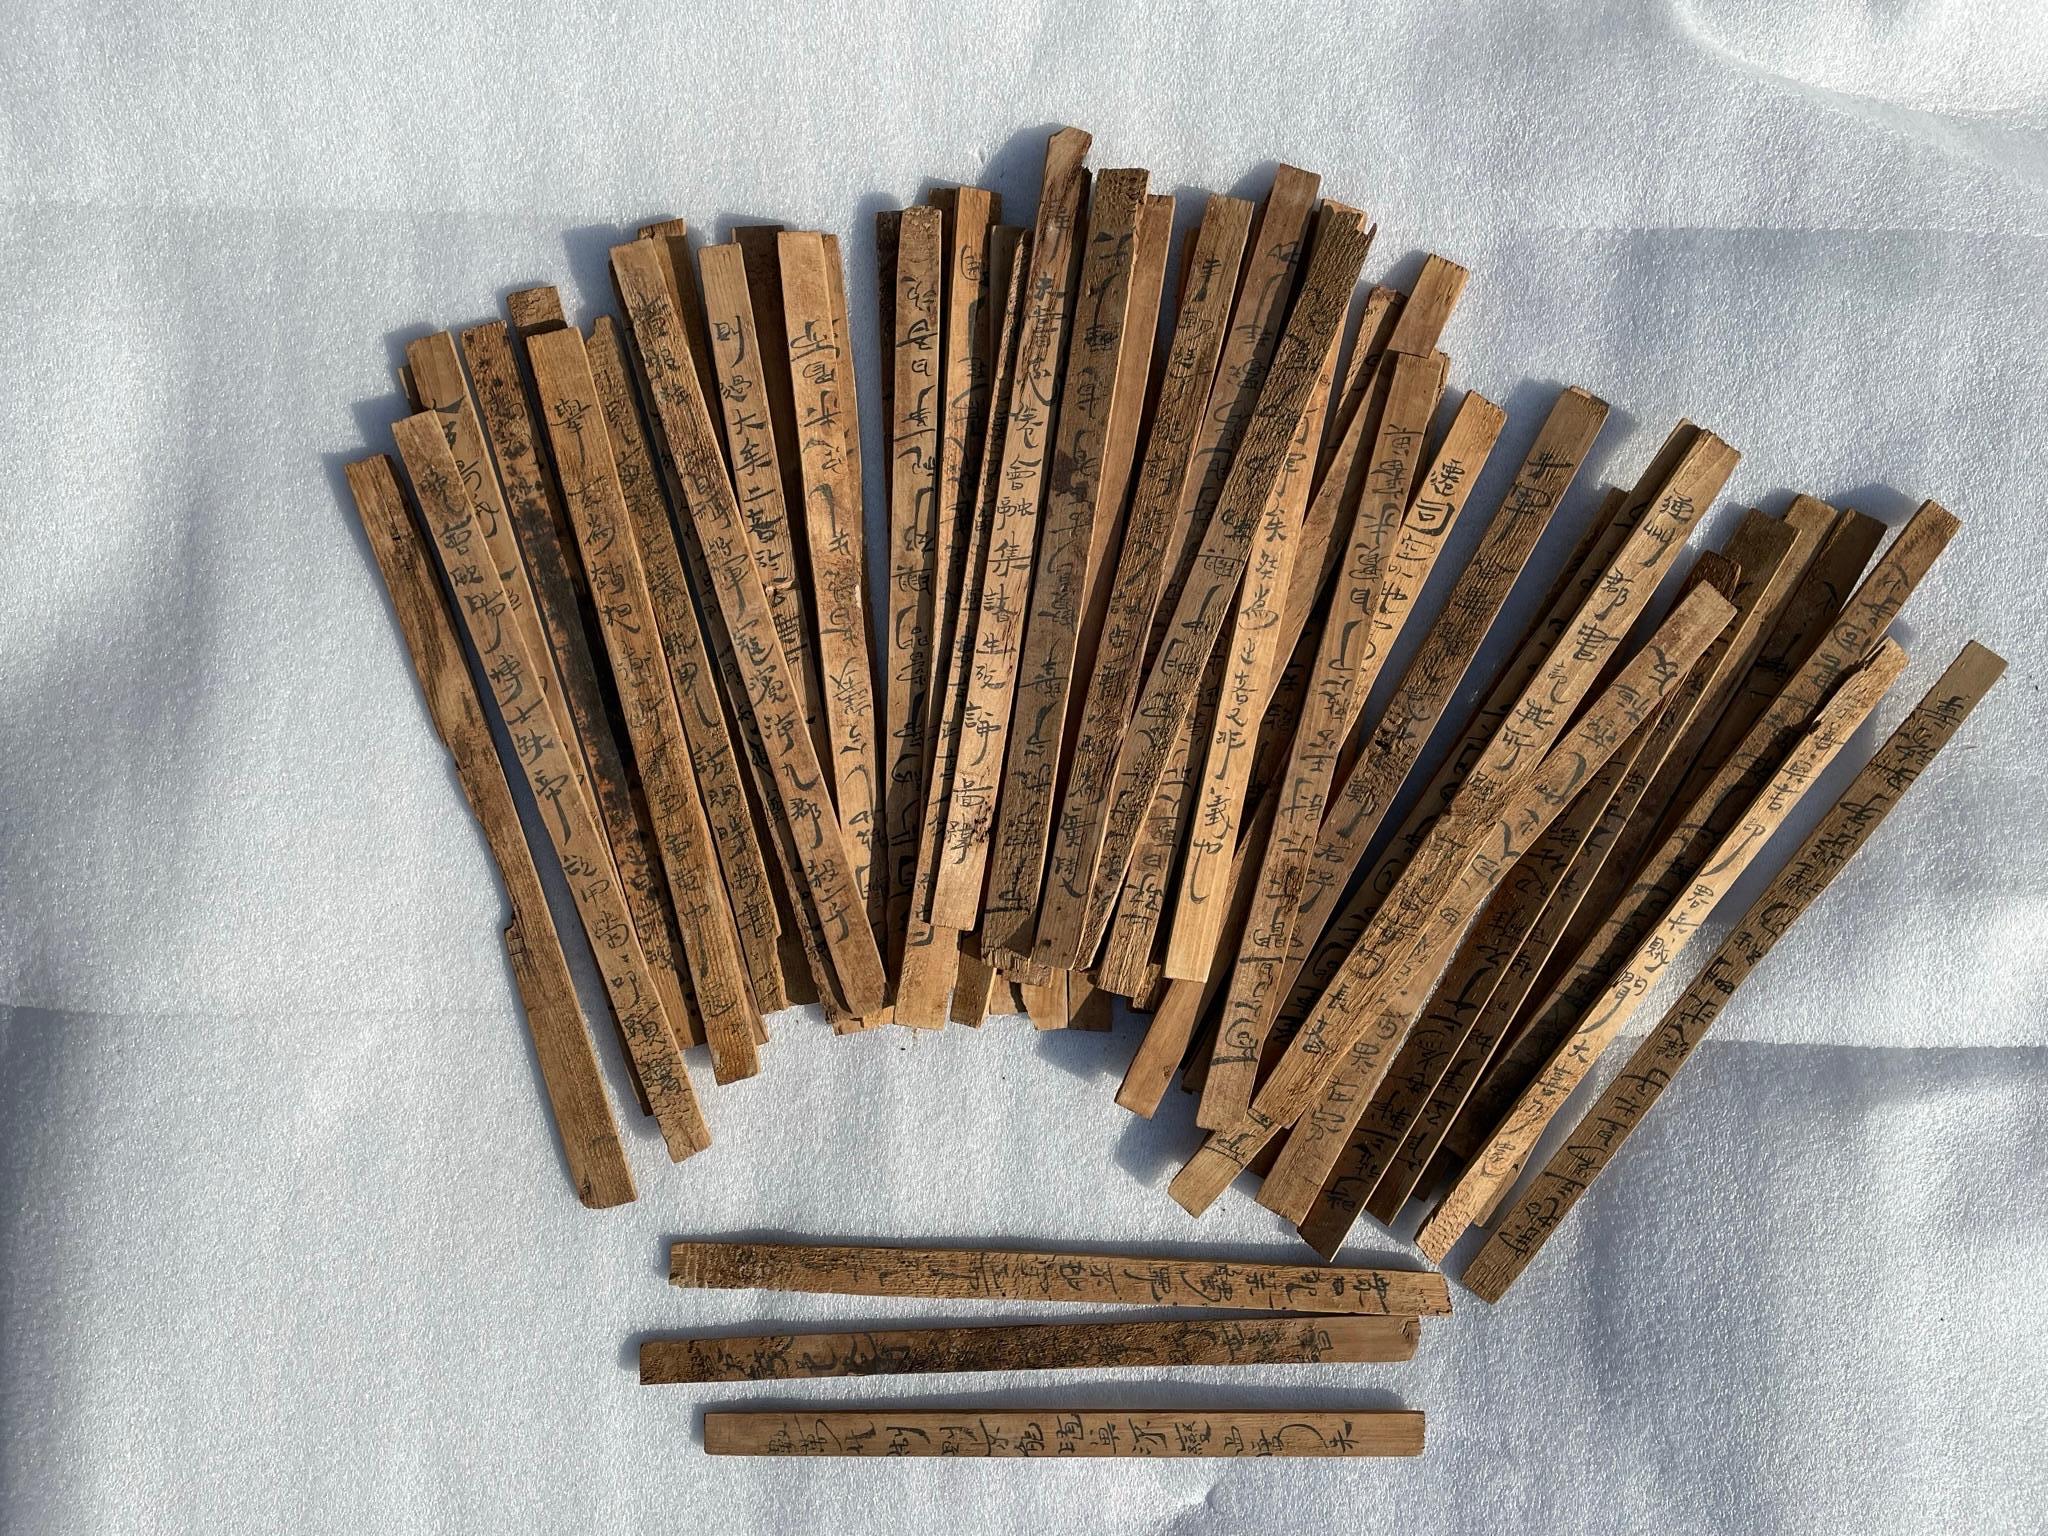 Bambus und hölzerne Zettel - jiandú - waren in China vor der weit verbreiteten Einführung von Papier in den ersten beiden Jahrhunderten n. Chr. das Hauptmedium zum Schreiben von Dokumenten.

Diese beachtliche Gruppe von 59 Exemplaren einzigartiger